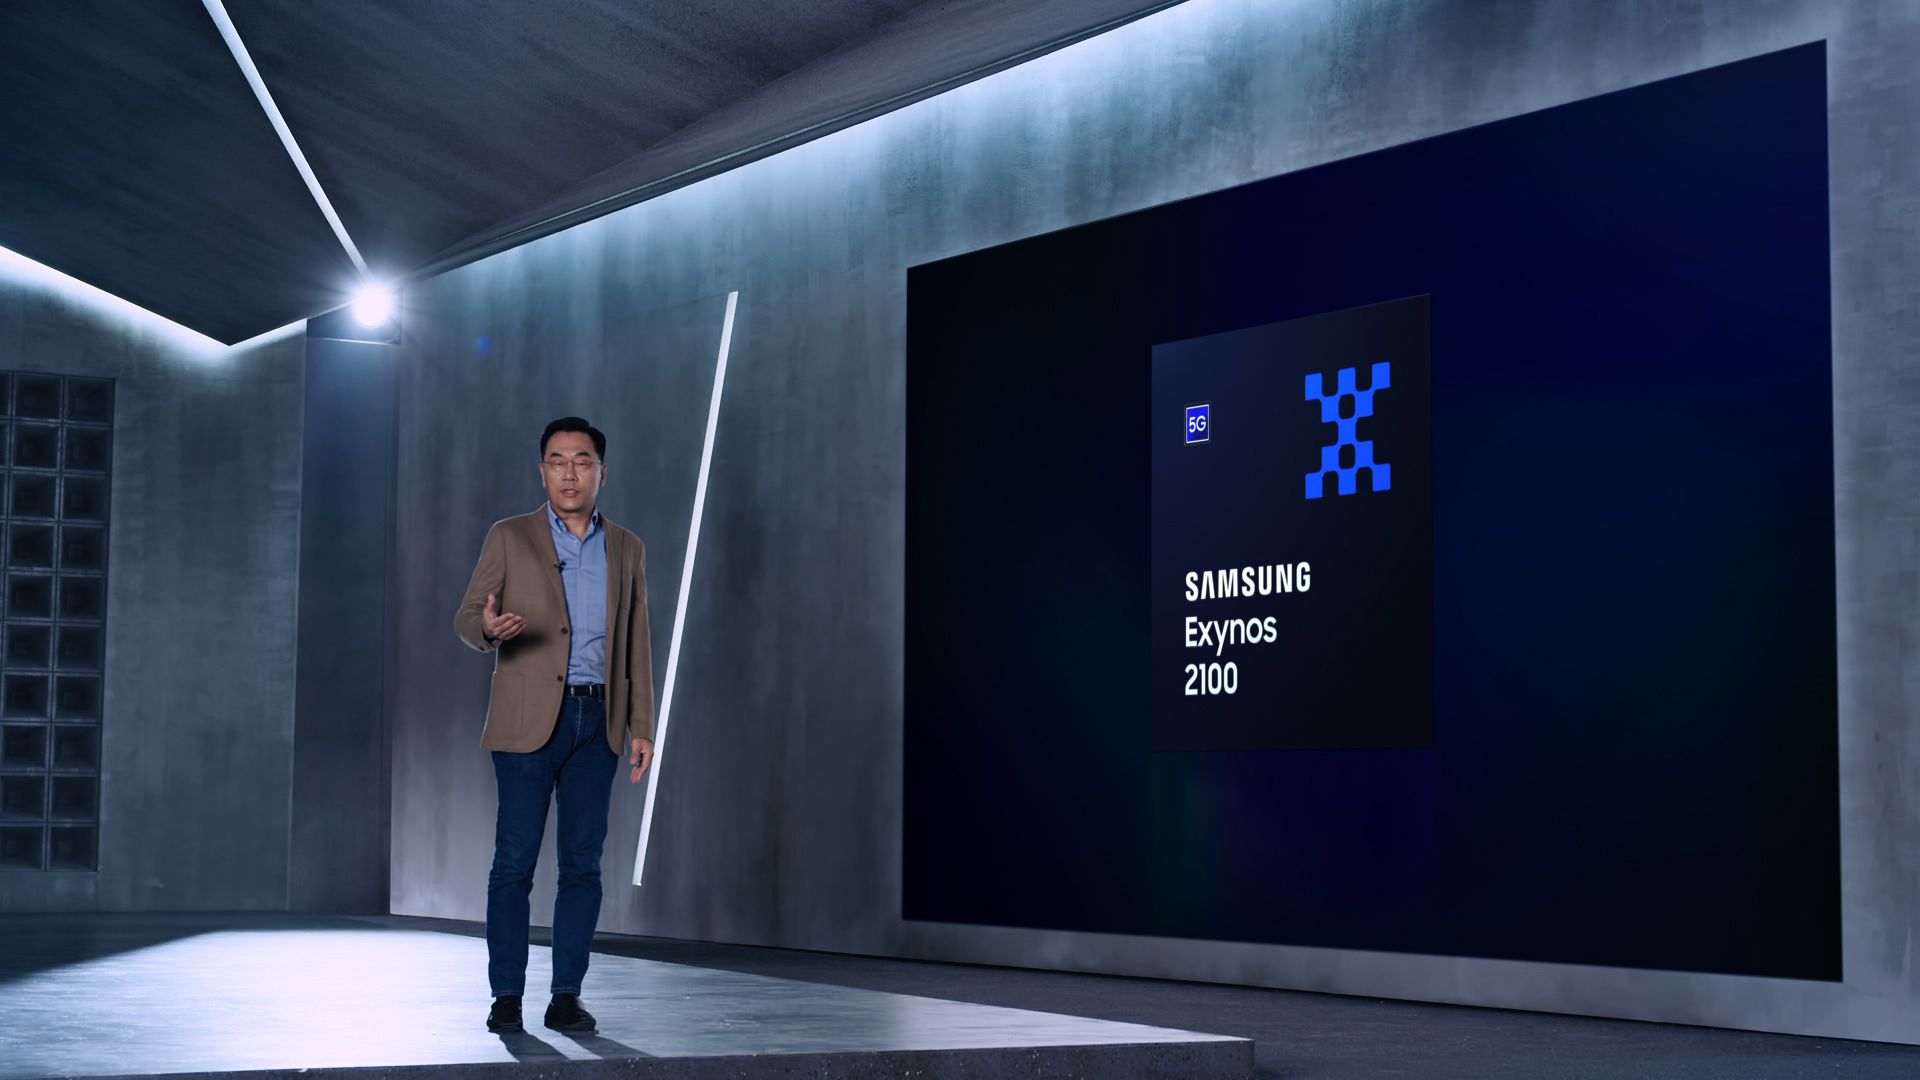 Samsung работает над процессором, который превзойдёт Apple A14 Bionic в производительности (Exynos 2100 dl4 large)